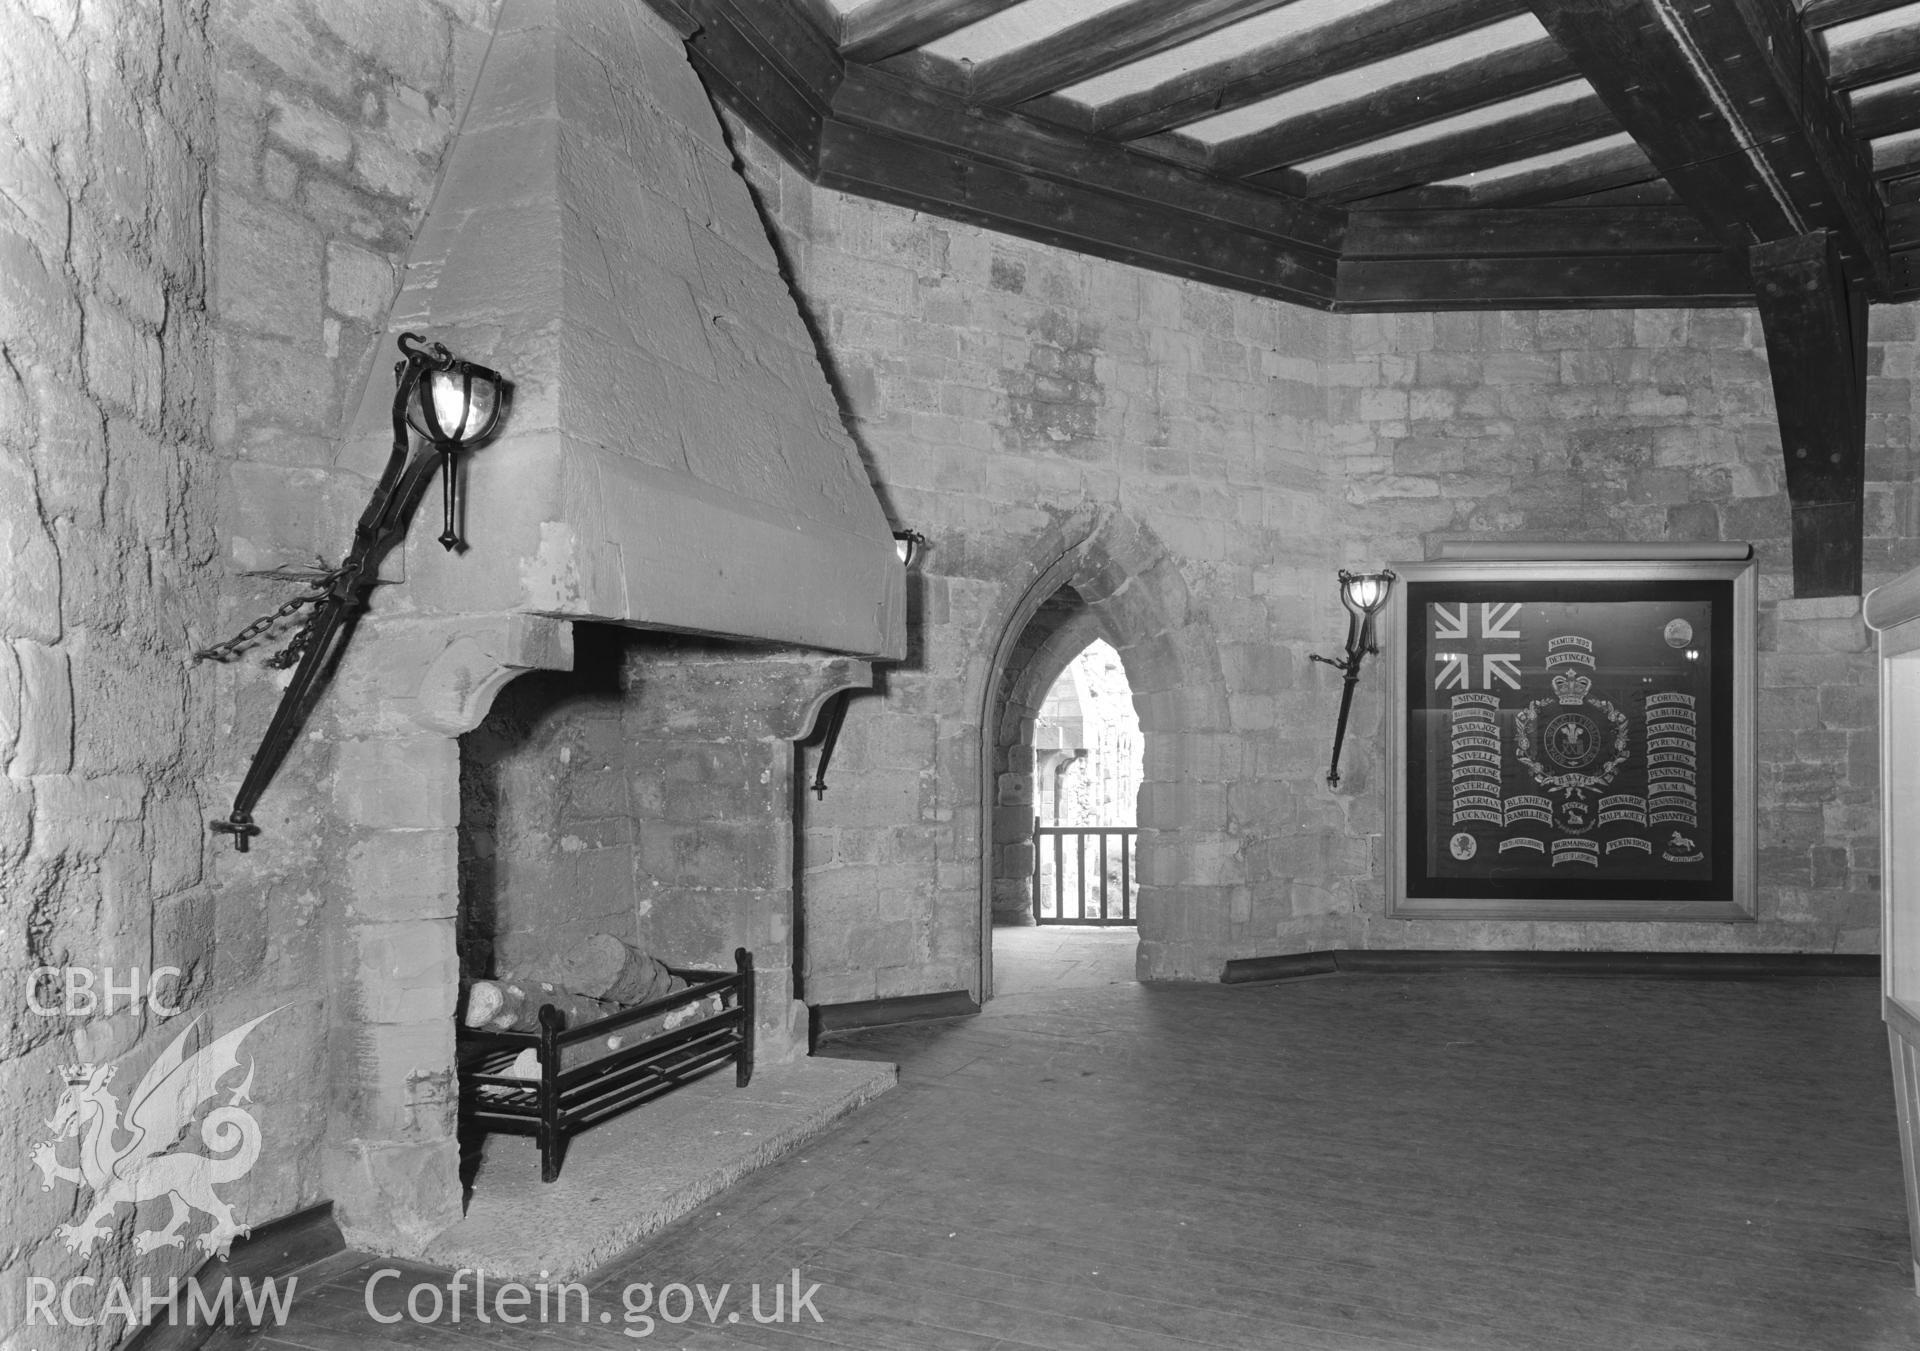 D.O.E photograph of Caernarfon Castle - Eagle Tower interior..